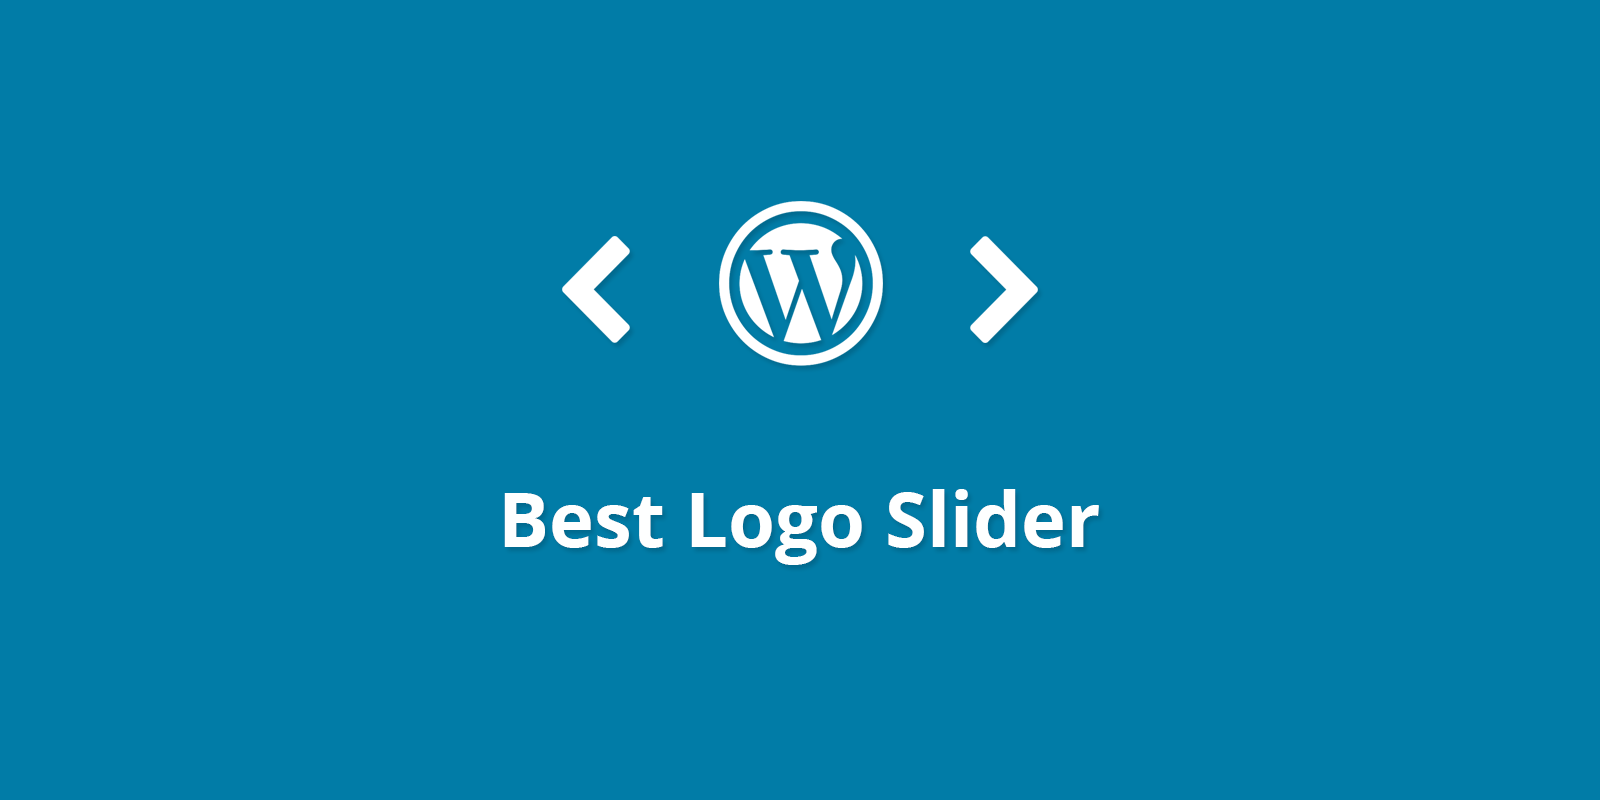 Best Logo Slider Pro